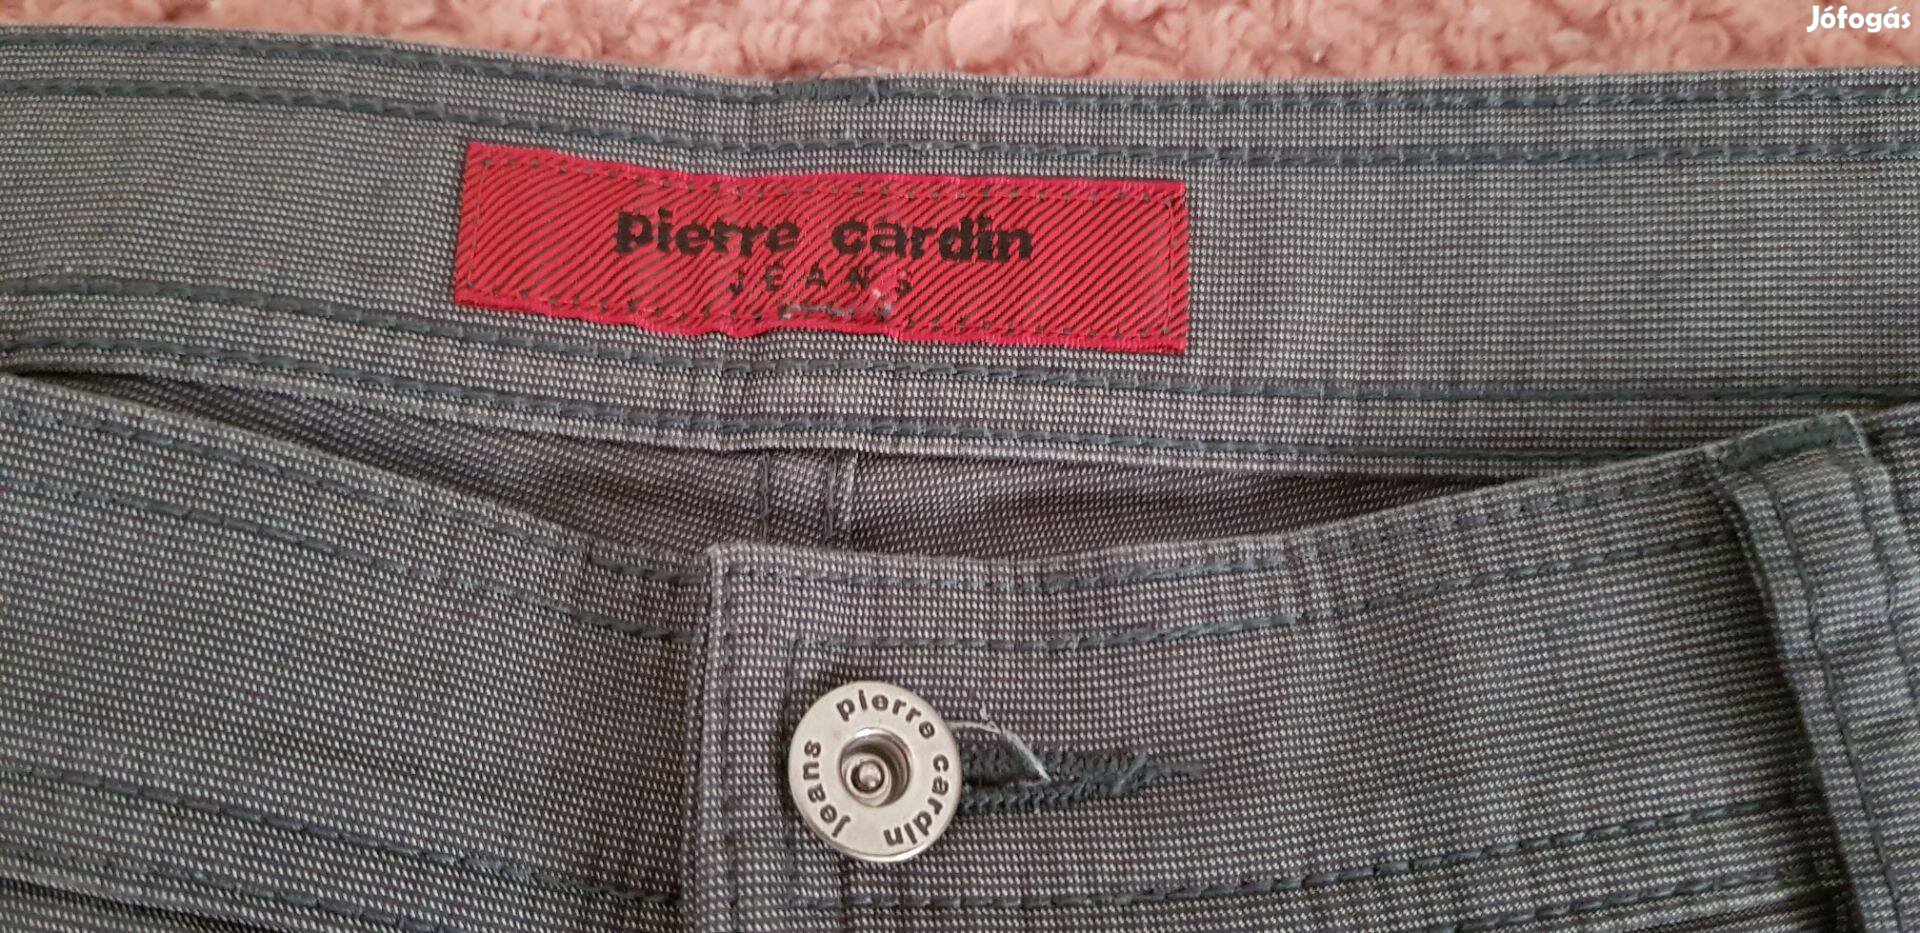 Pierre cardin nadrág vadonatúj állapotban